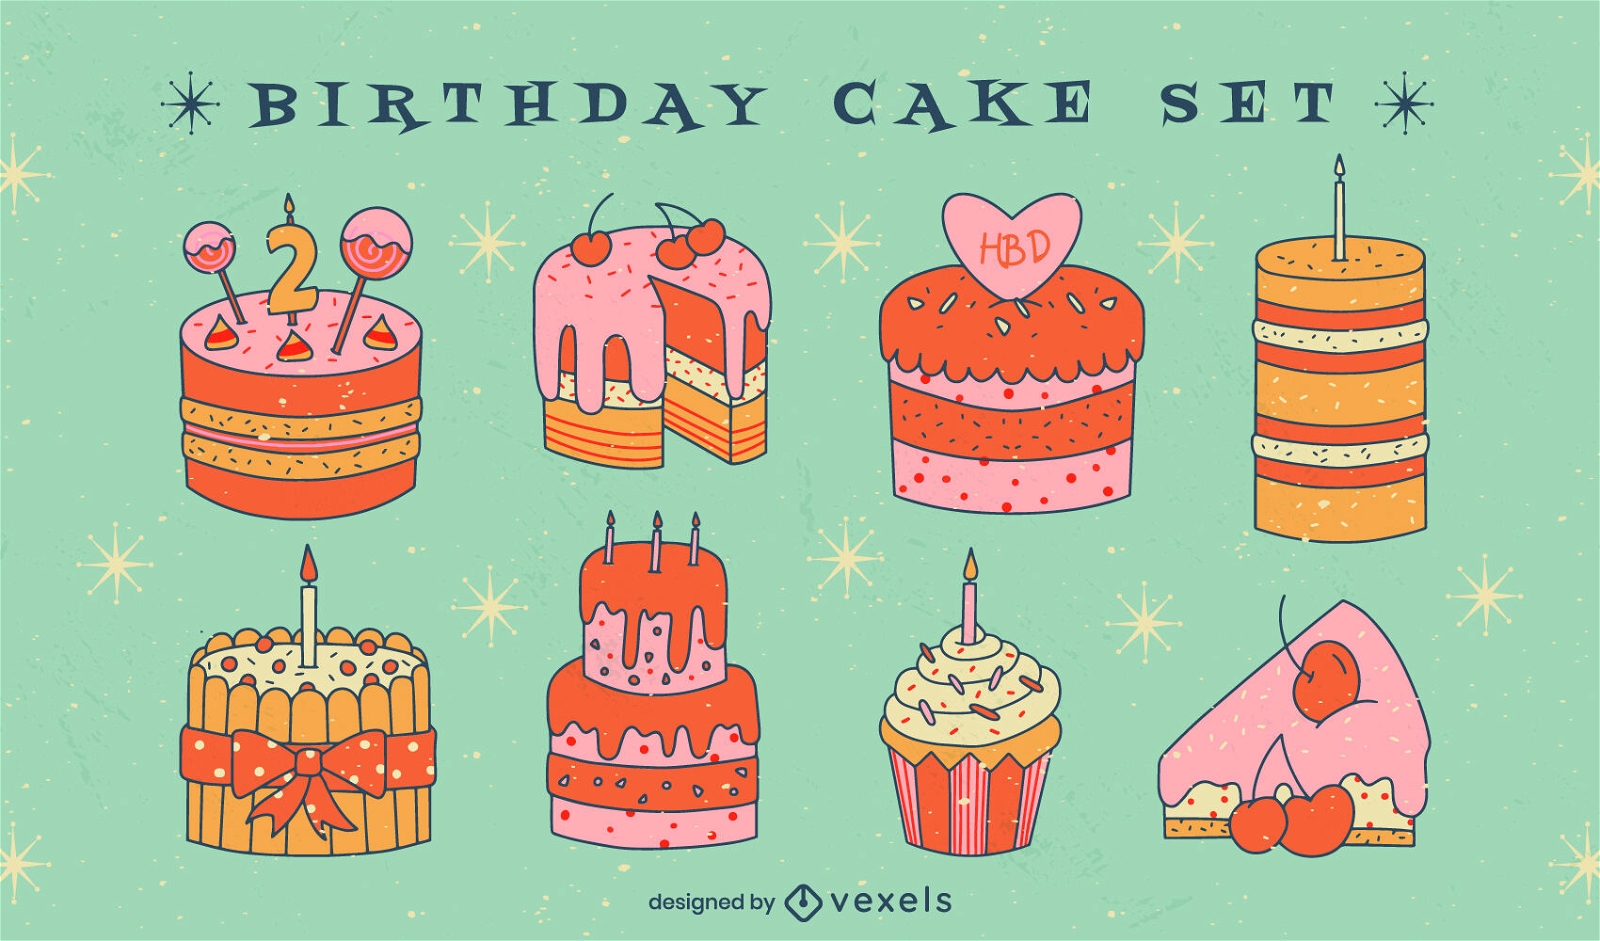 Birthday cake illustration set